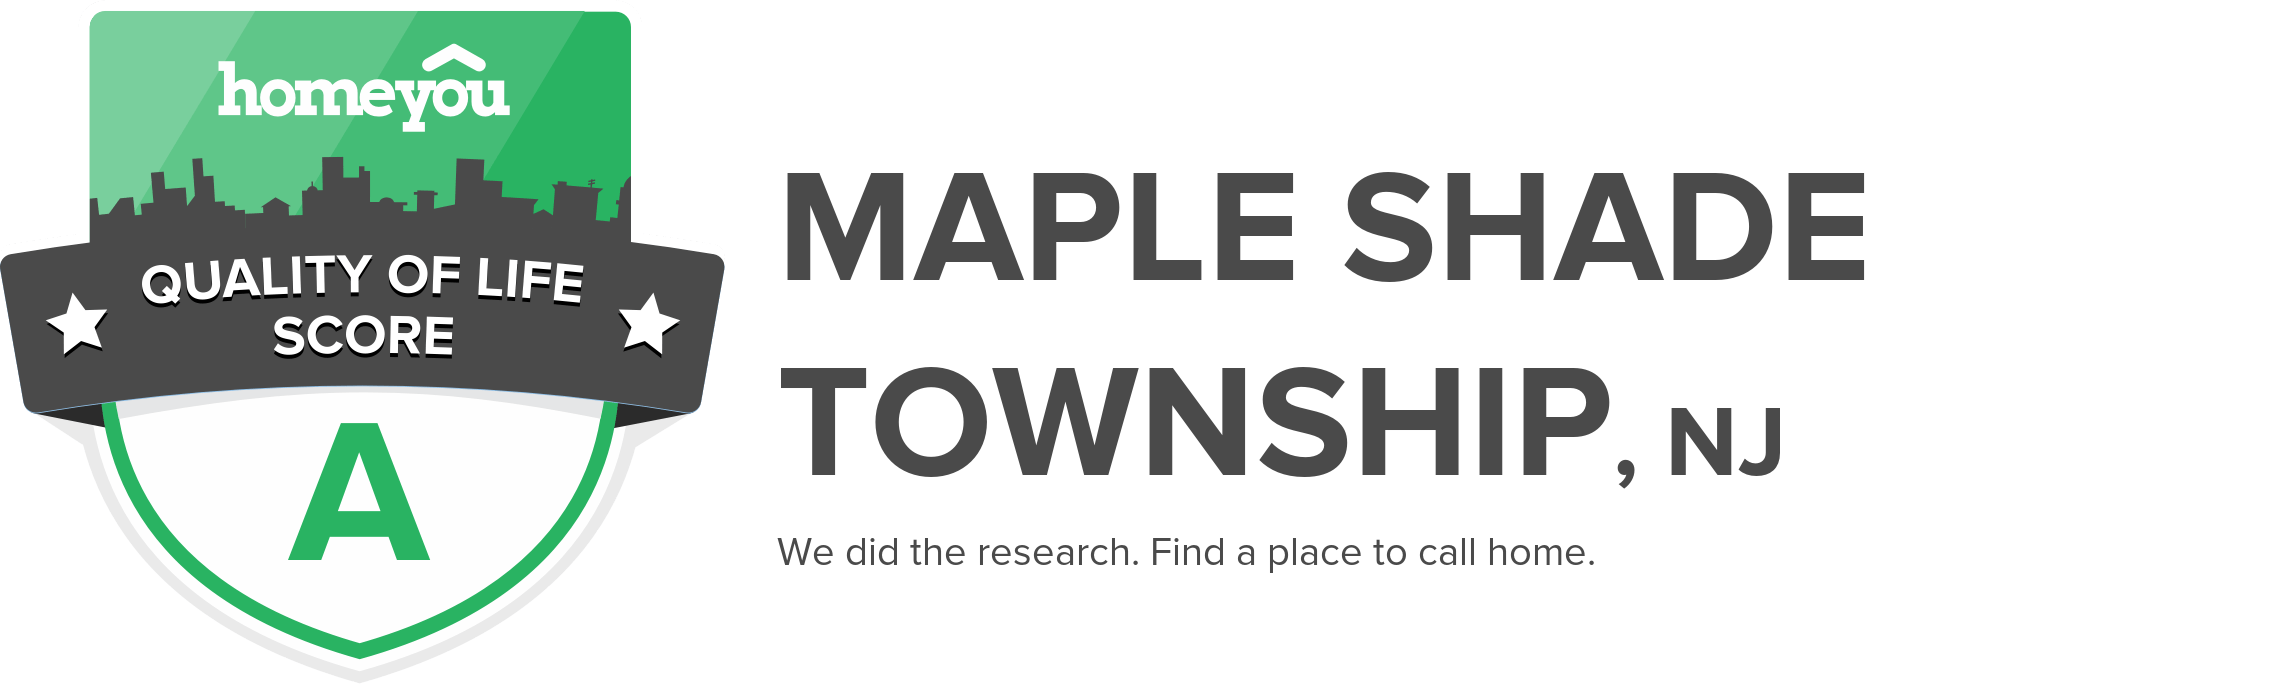 Maple Shade Township, NJ